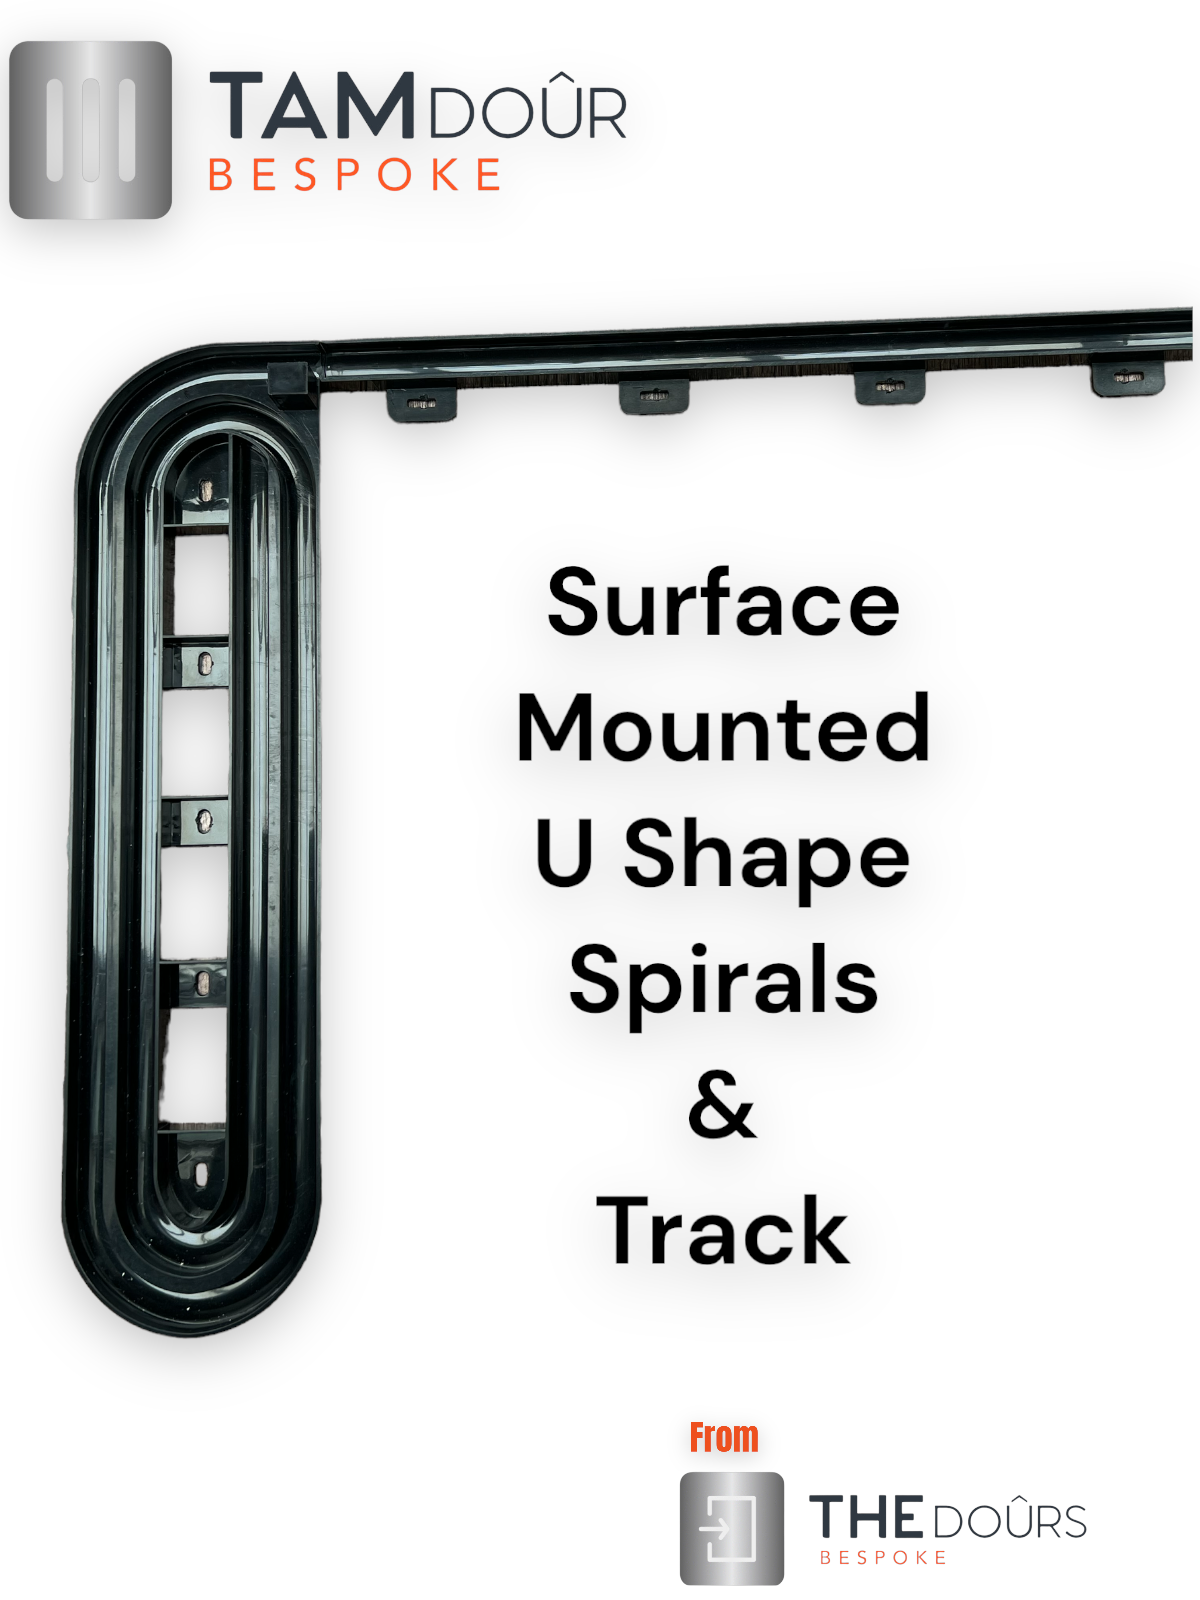 Schwarzes Rollladentür-Set – weißer Griff, Höhe 1500 mm bis 2000 mm